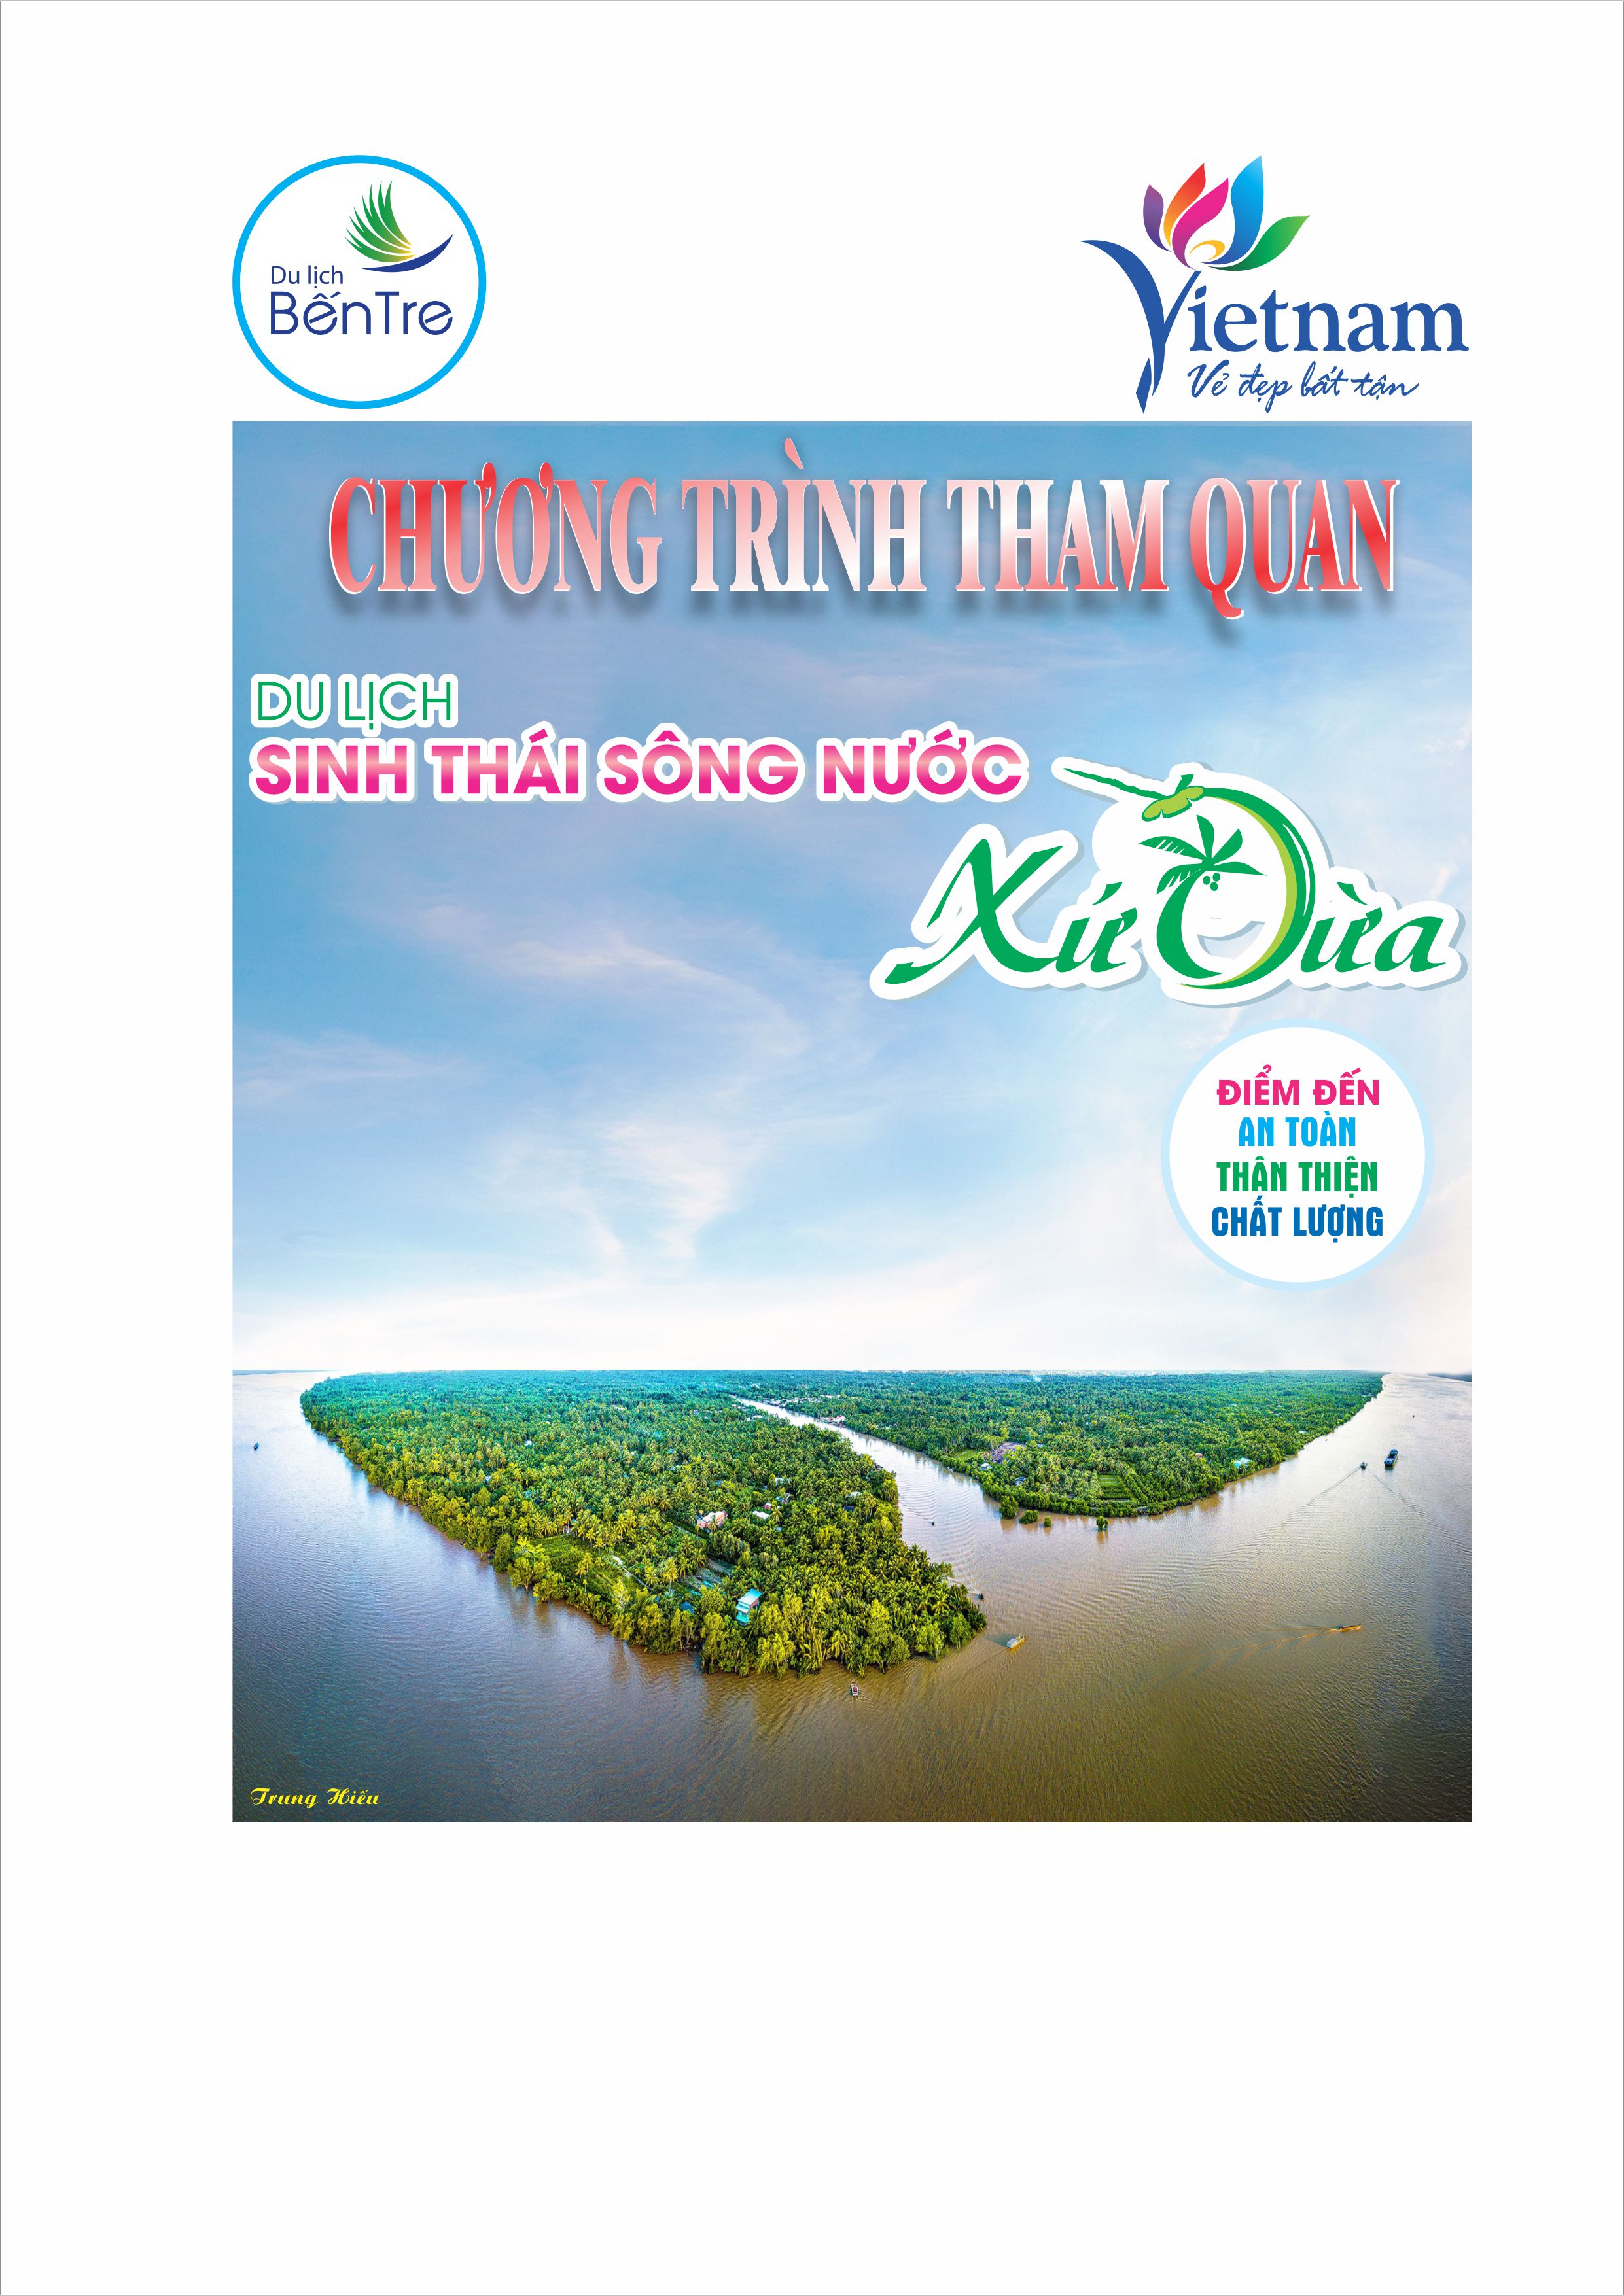 Chương trình tham quan Du lịch "sinh thái sông nước Xứ Dừa" Điểm đến An toàn - Thân thiện - Chất lượng